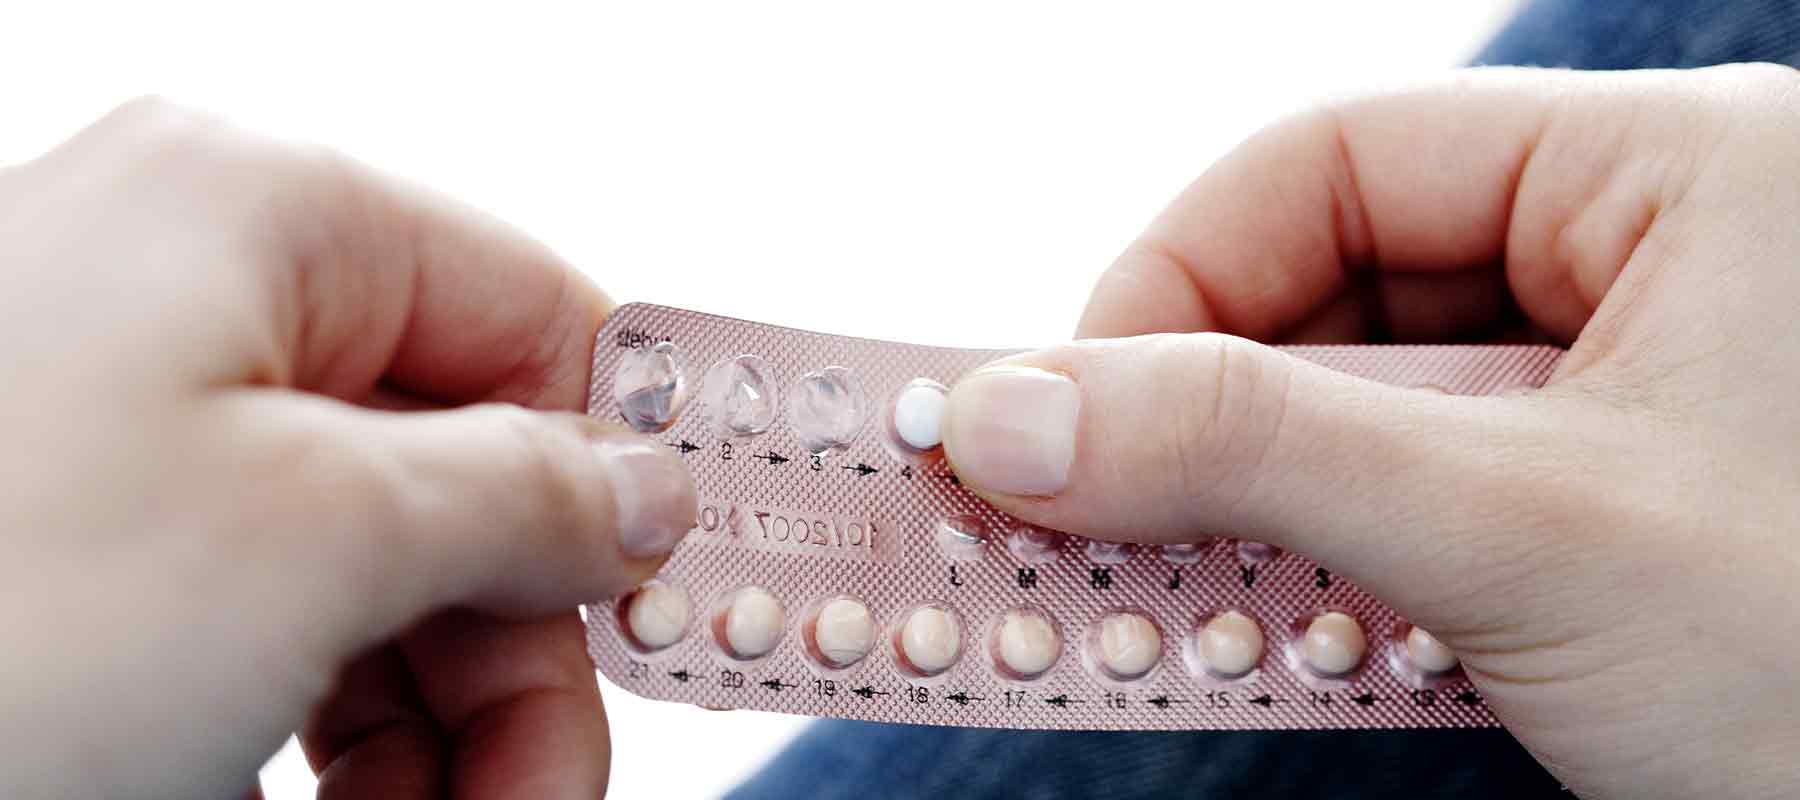 После прекращения противозачаточных. Mini Pill противозачаточные. Комбинированные гормональные контрацептивы. Гормональные методы контрацепции таблетки. Оральная контрацепция таблетки.